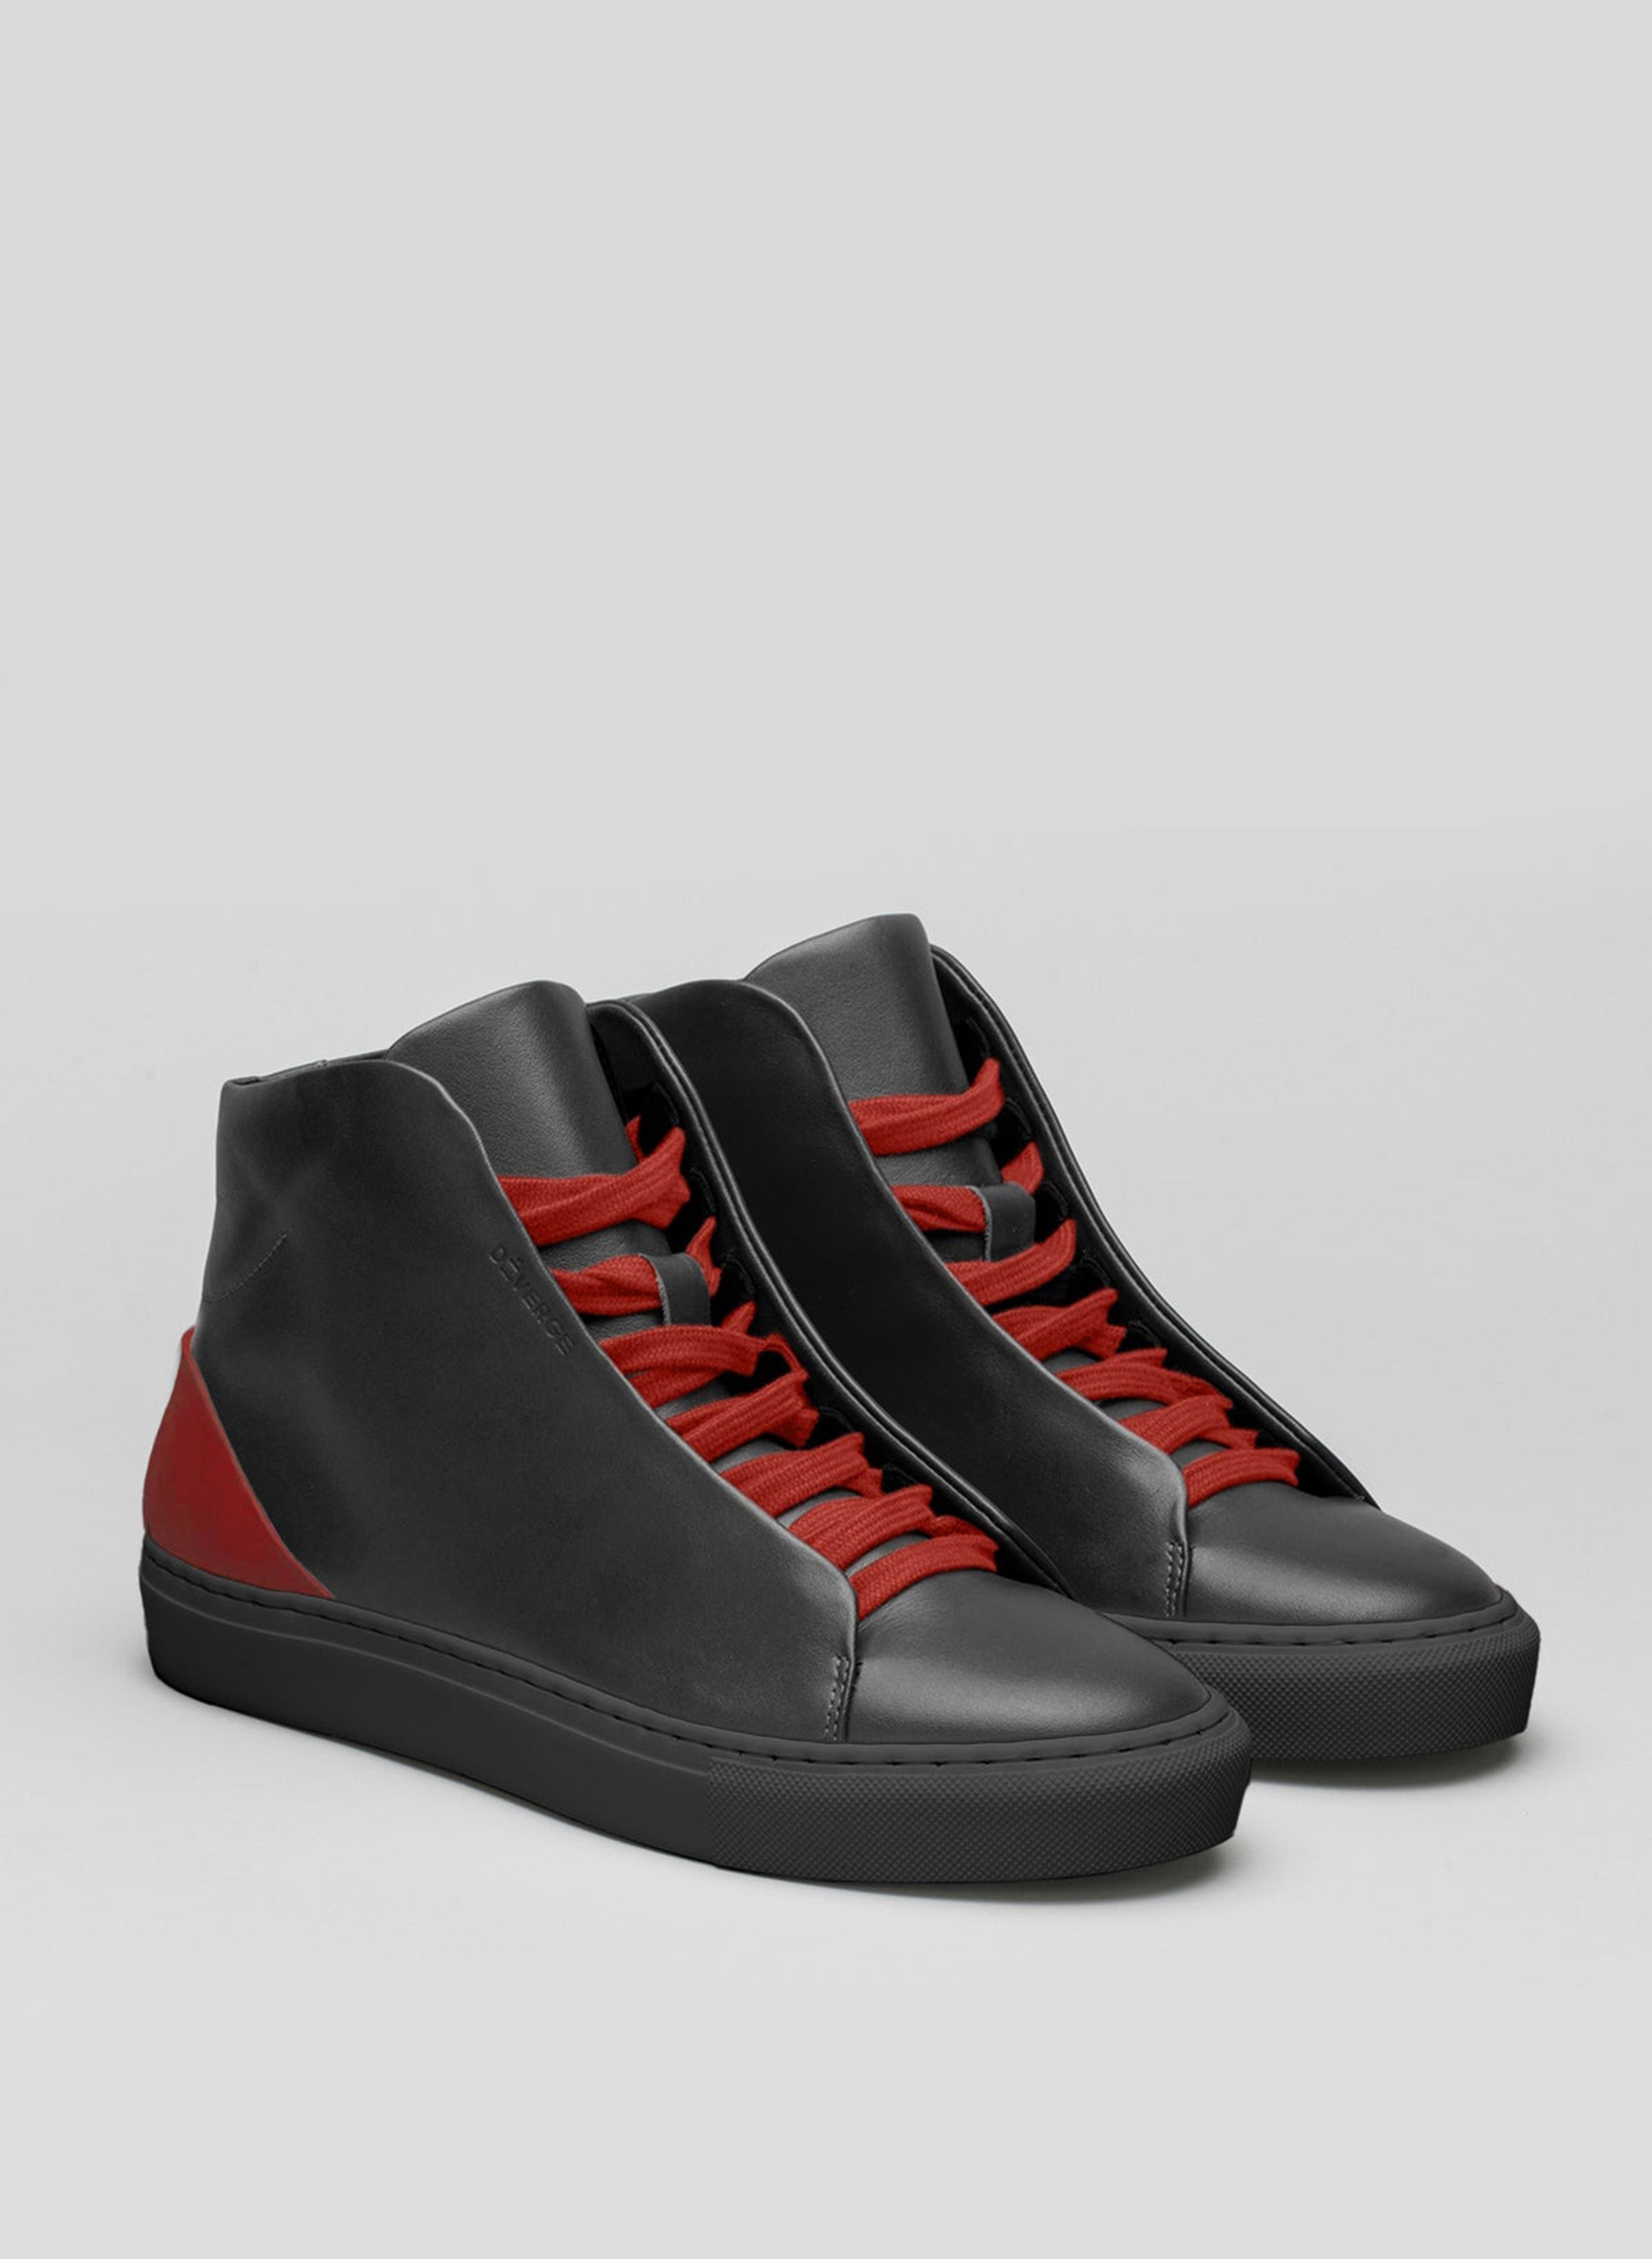 Un par de zapatillas negras de caña alta sneakers con cordones rojos, muestra de los zapatos personalizados de Diverge.